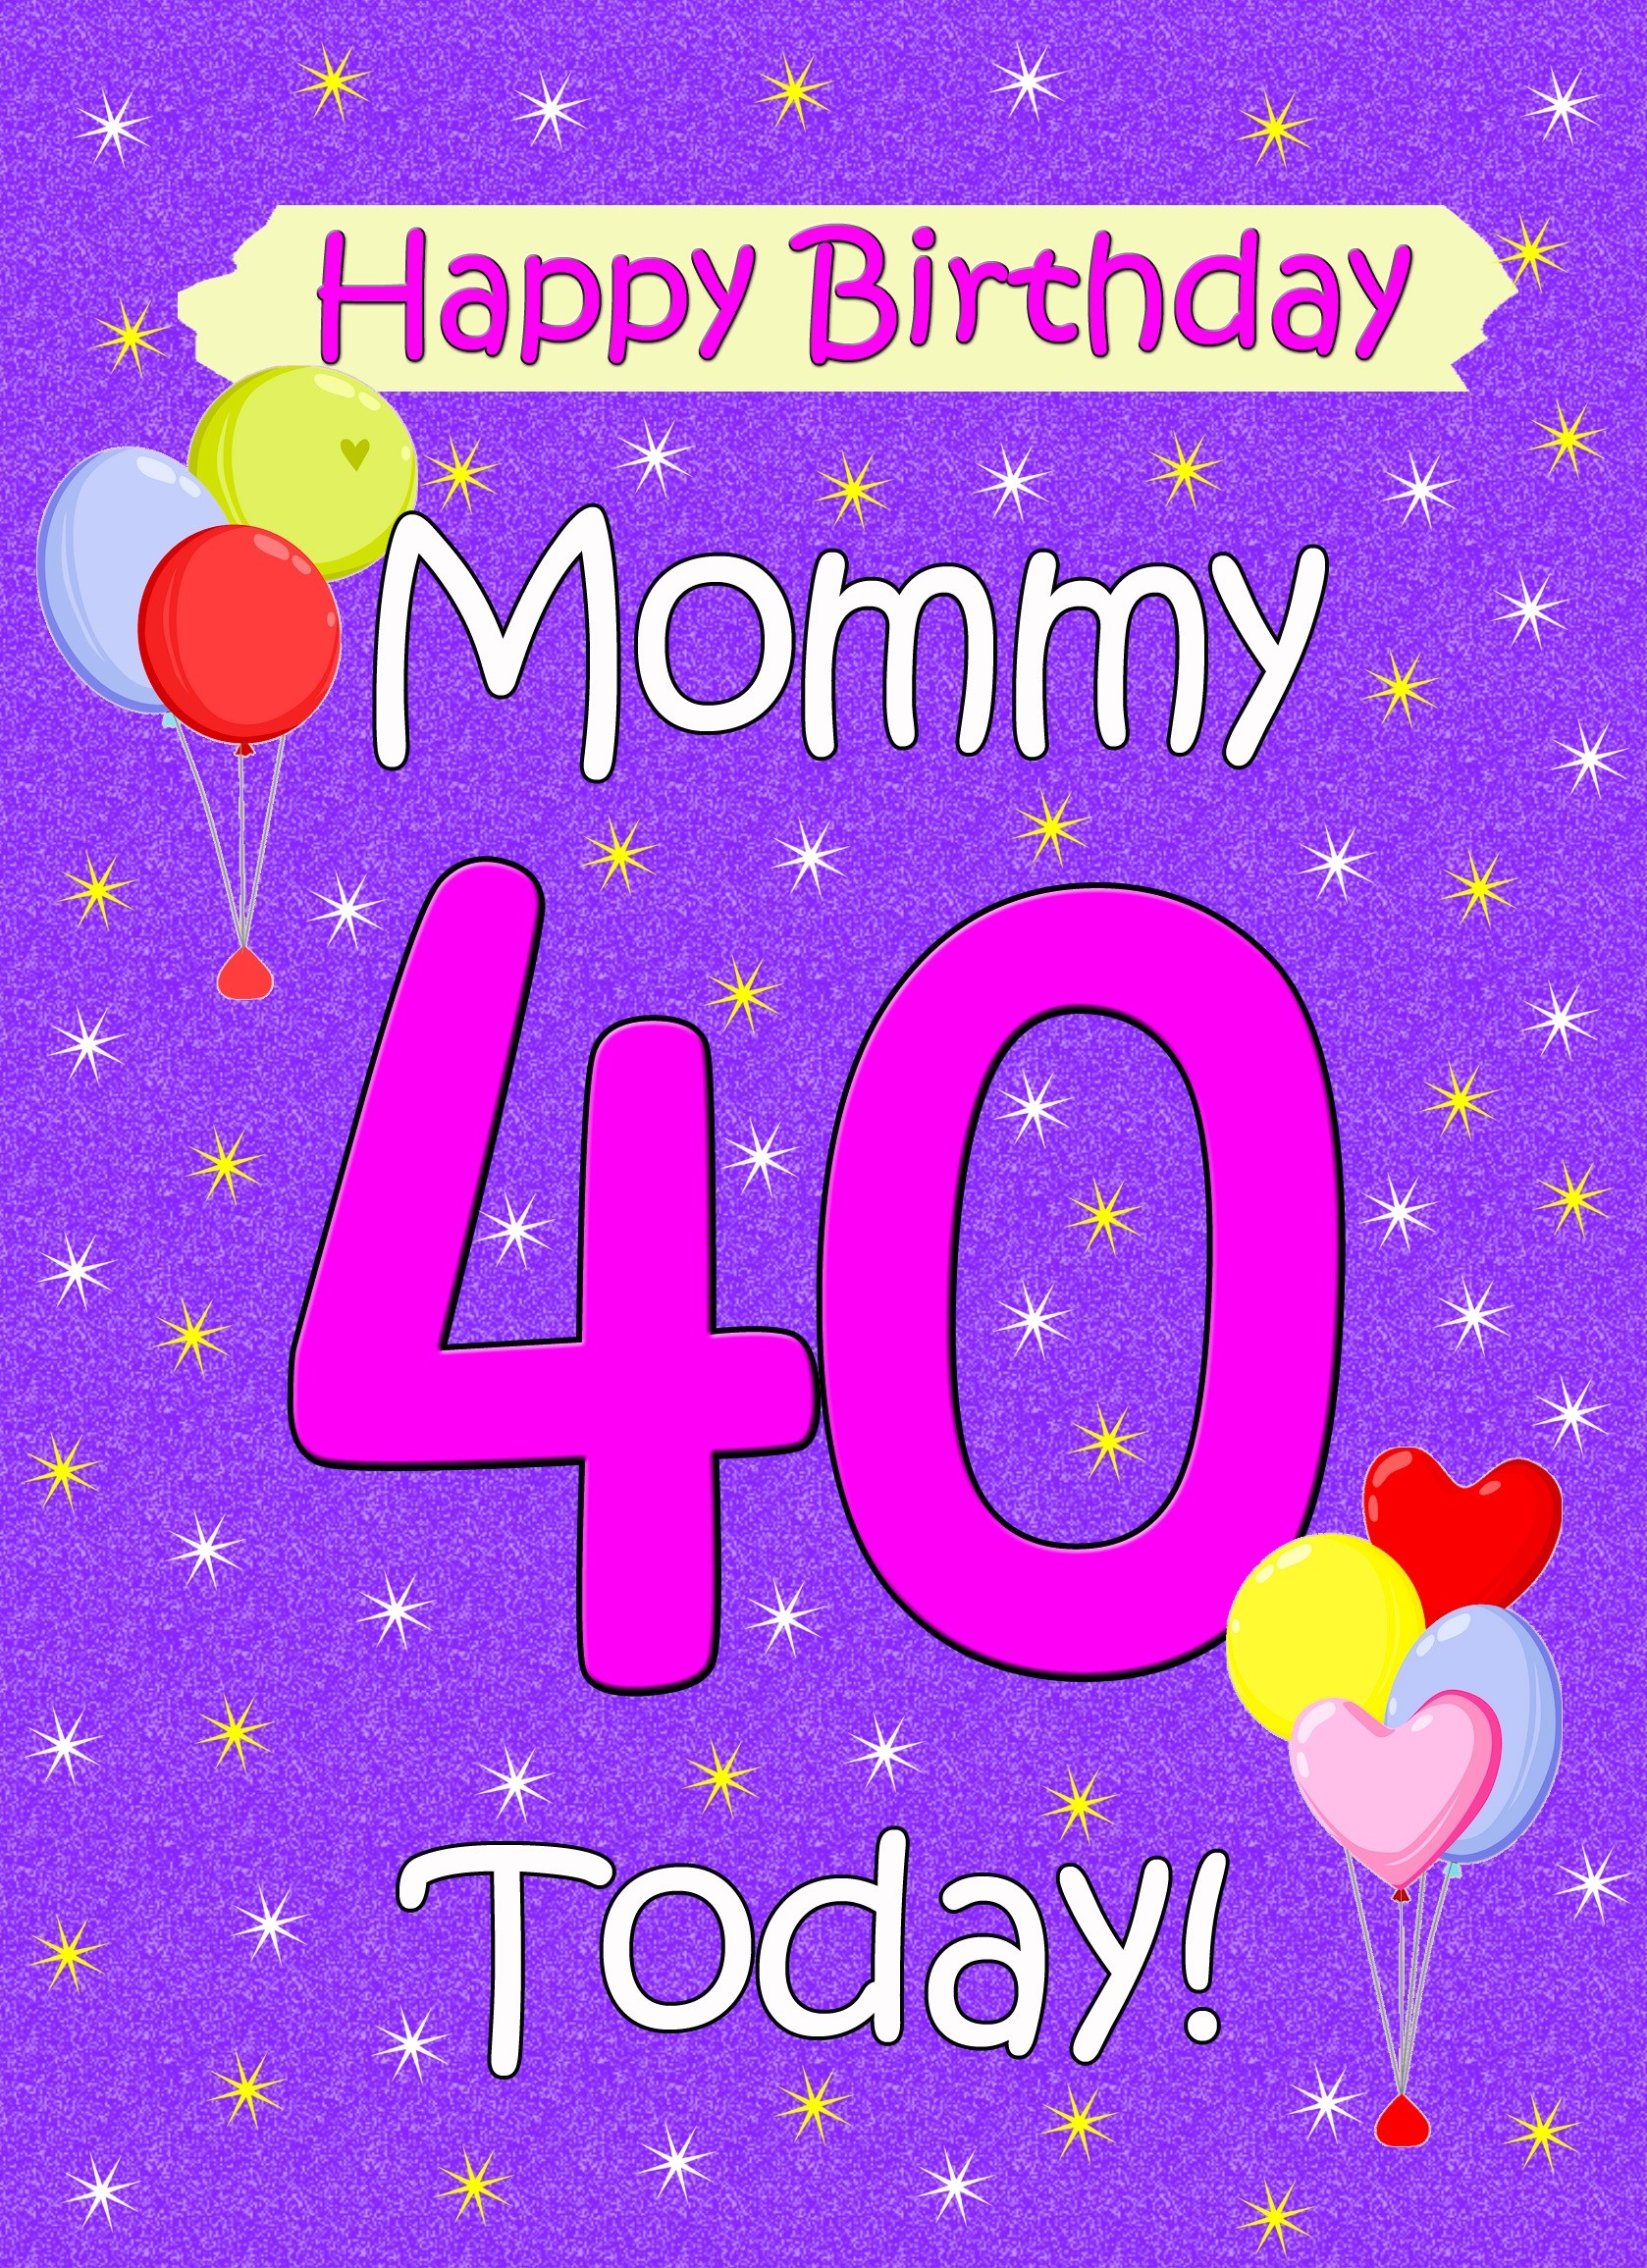 Mommy 40th Birthday Card (Lilac)